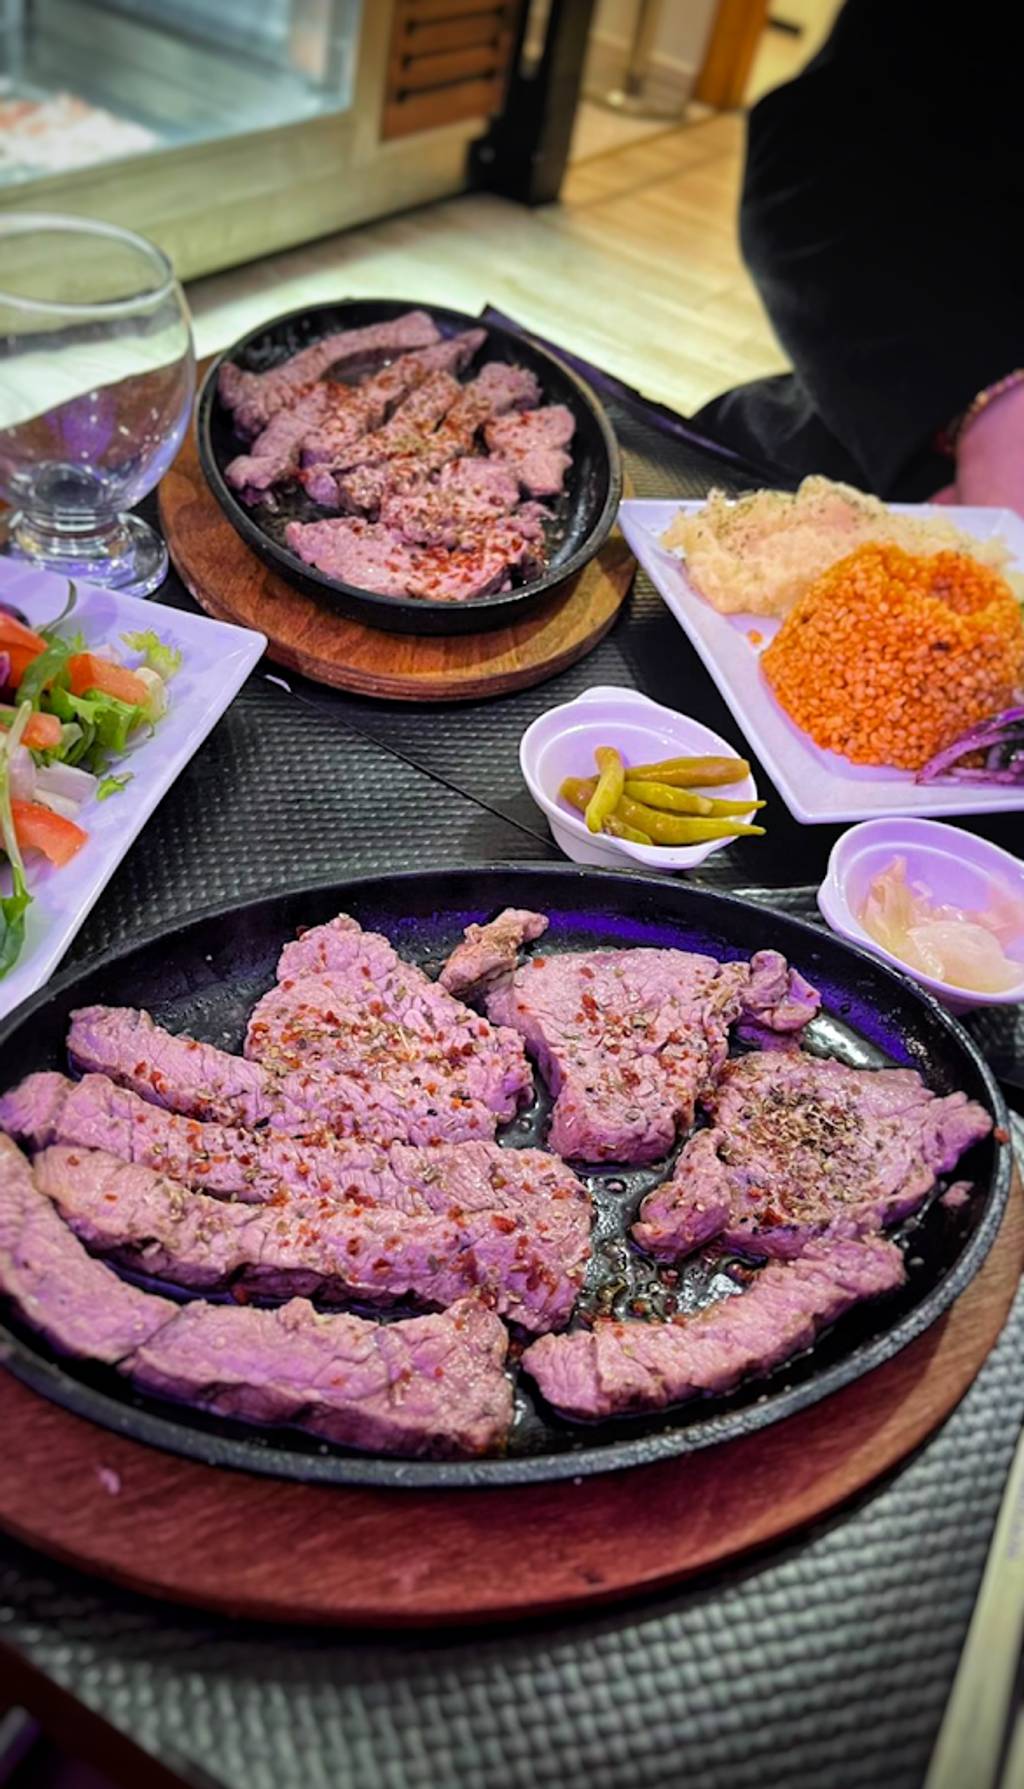 O'SAM steak house Le Mans - Food Tableware Ingredient Plate Recipe